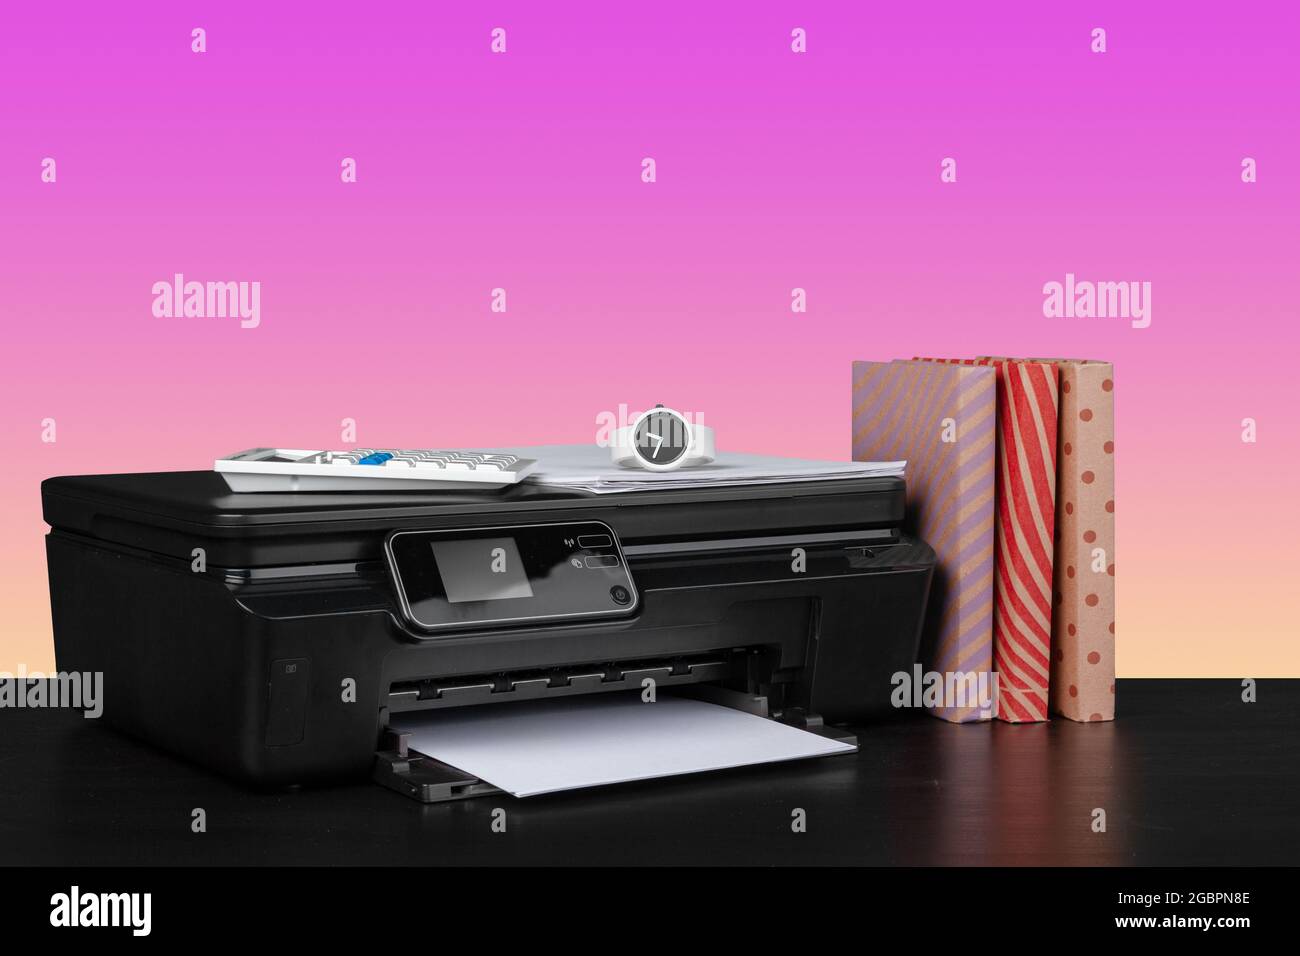 Imprimante laser domestique compacte sur fond rose Photo Stock - Alamy